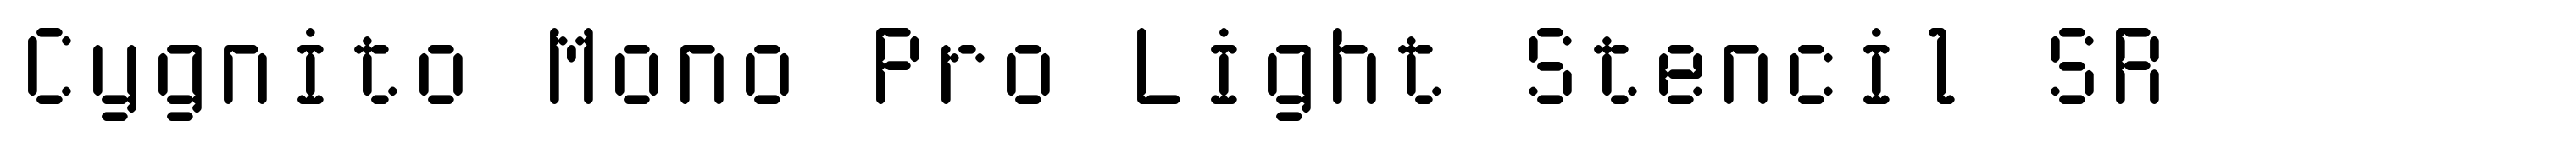 Cygnito Mono Pro Light Stencil SR